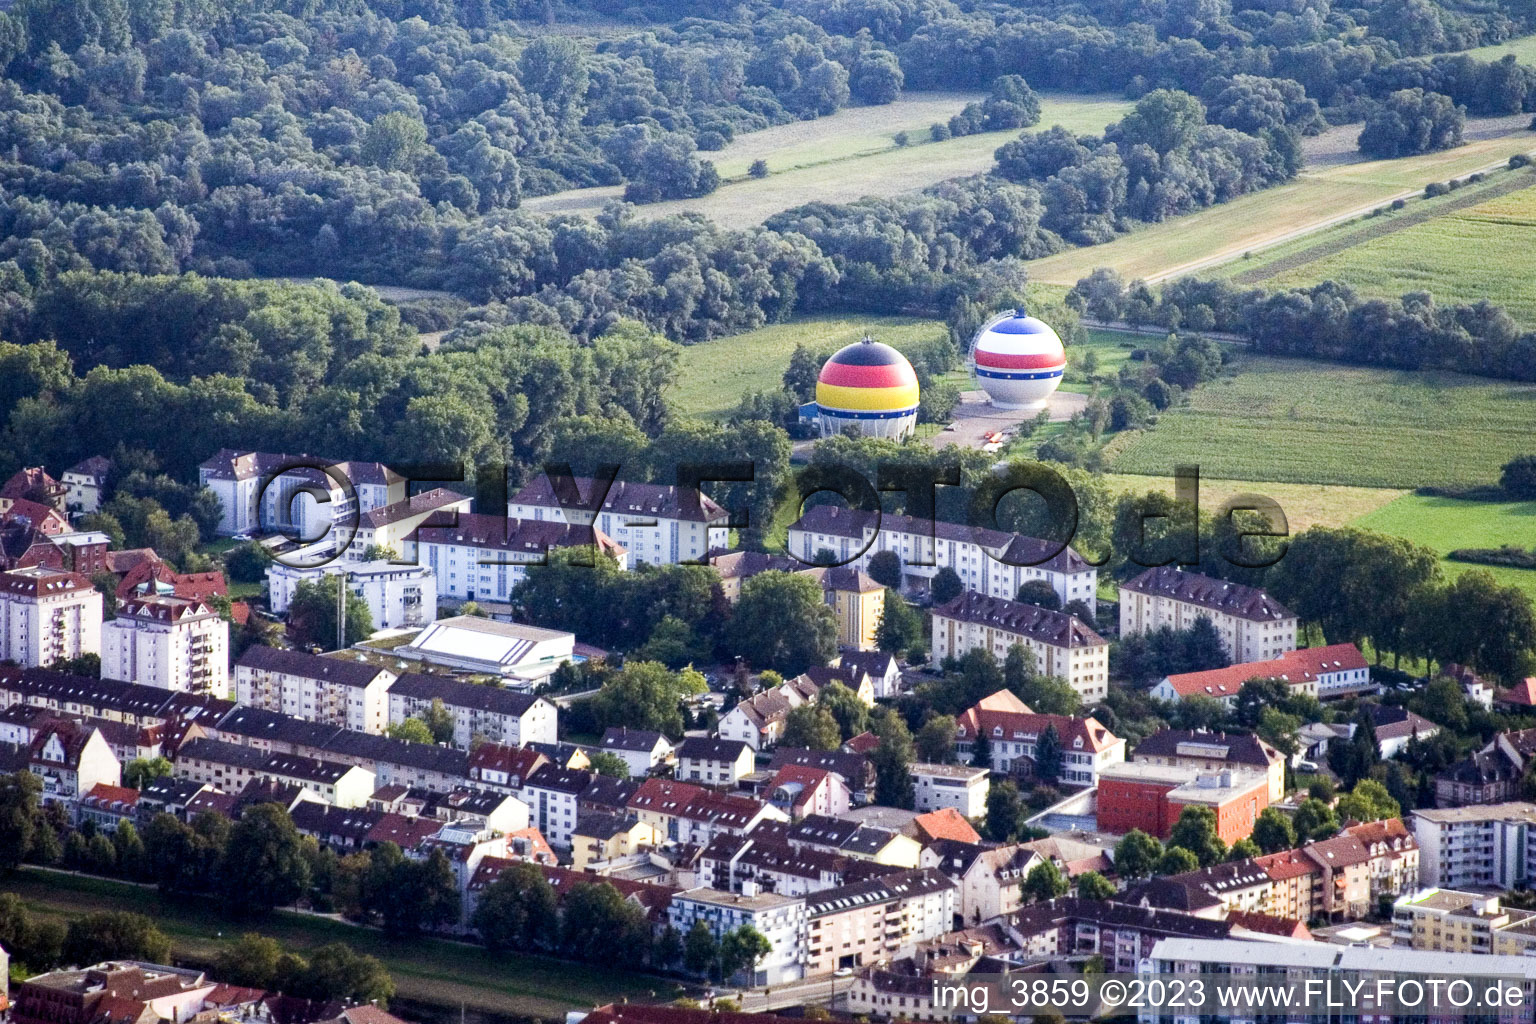 Kugelförmige Gastanks in Rastatt im Bundesland Baden-Württemberg, Deutschland